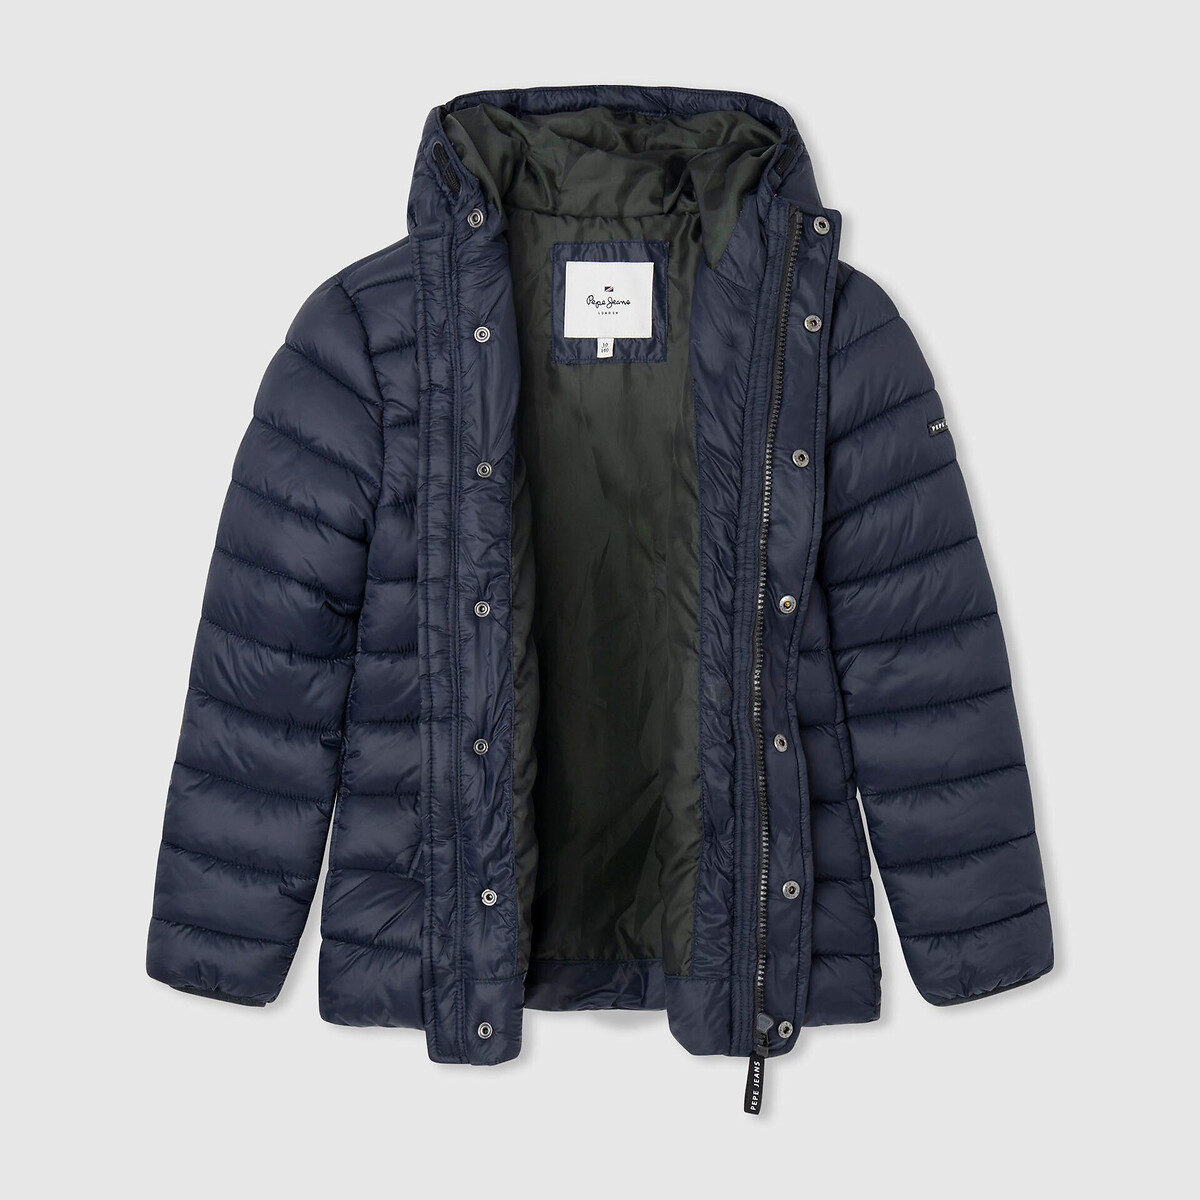 Куртка Стеганая средней длины с капюшоном 12 лет -150 см синий LaRedoute, размер 12 лет -150 см - фото 3